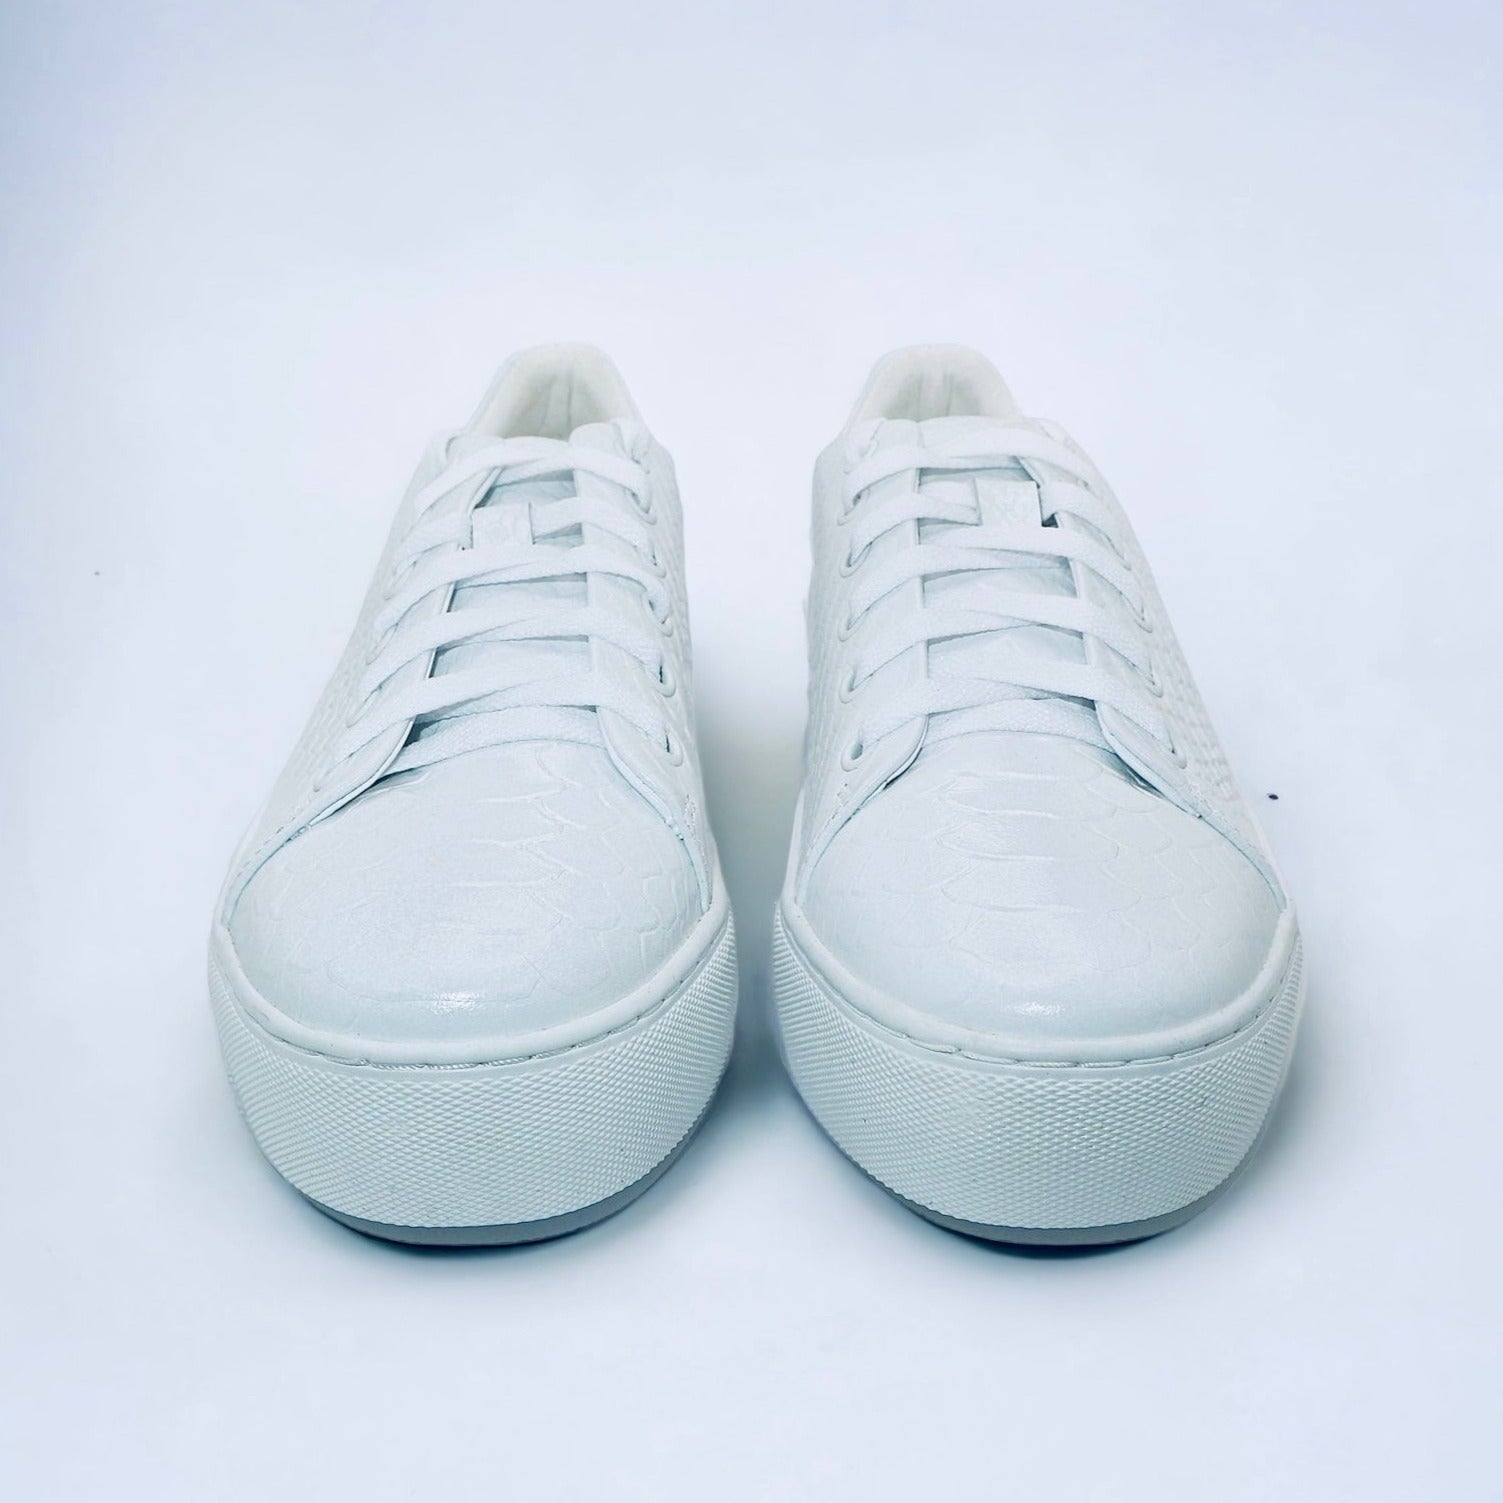 Amare the Best white for | sneakers Girls Michaela V